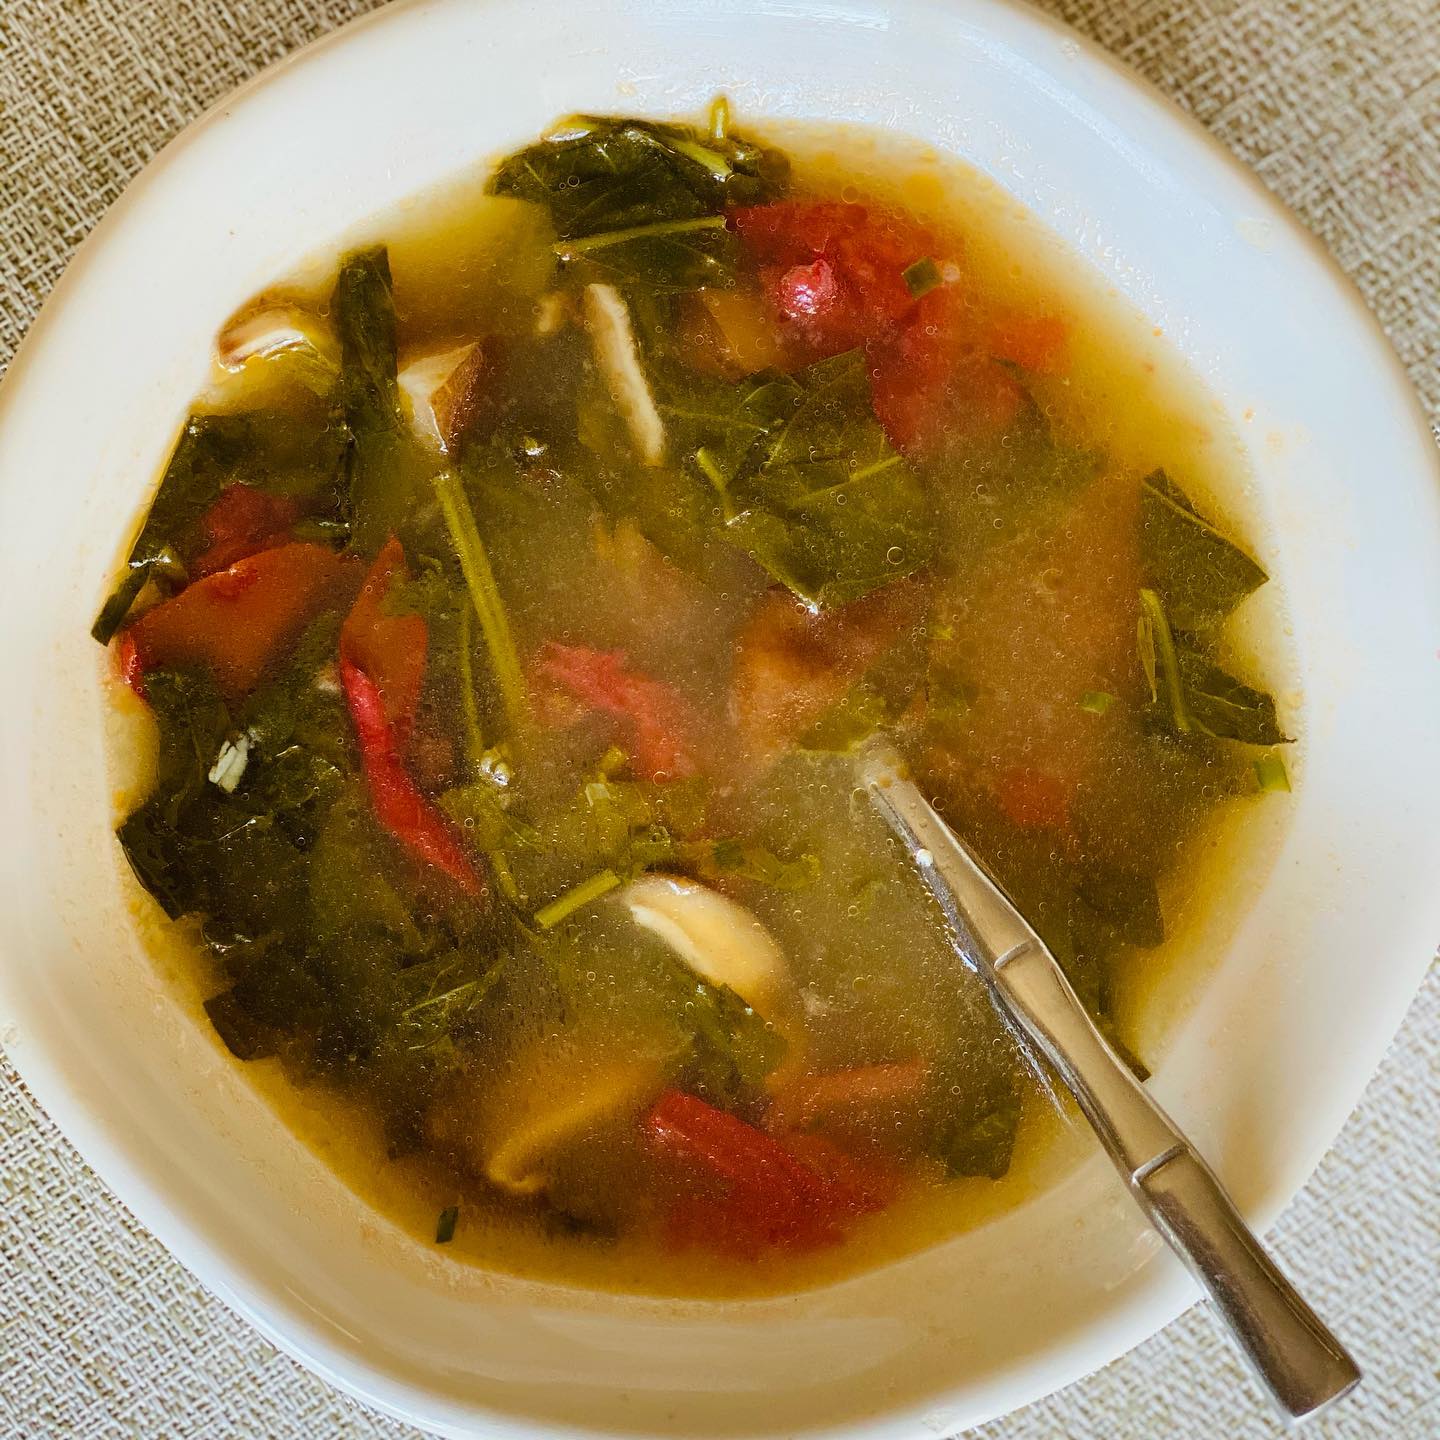 shiitake mushroom soup with greens and tomato